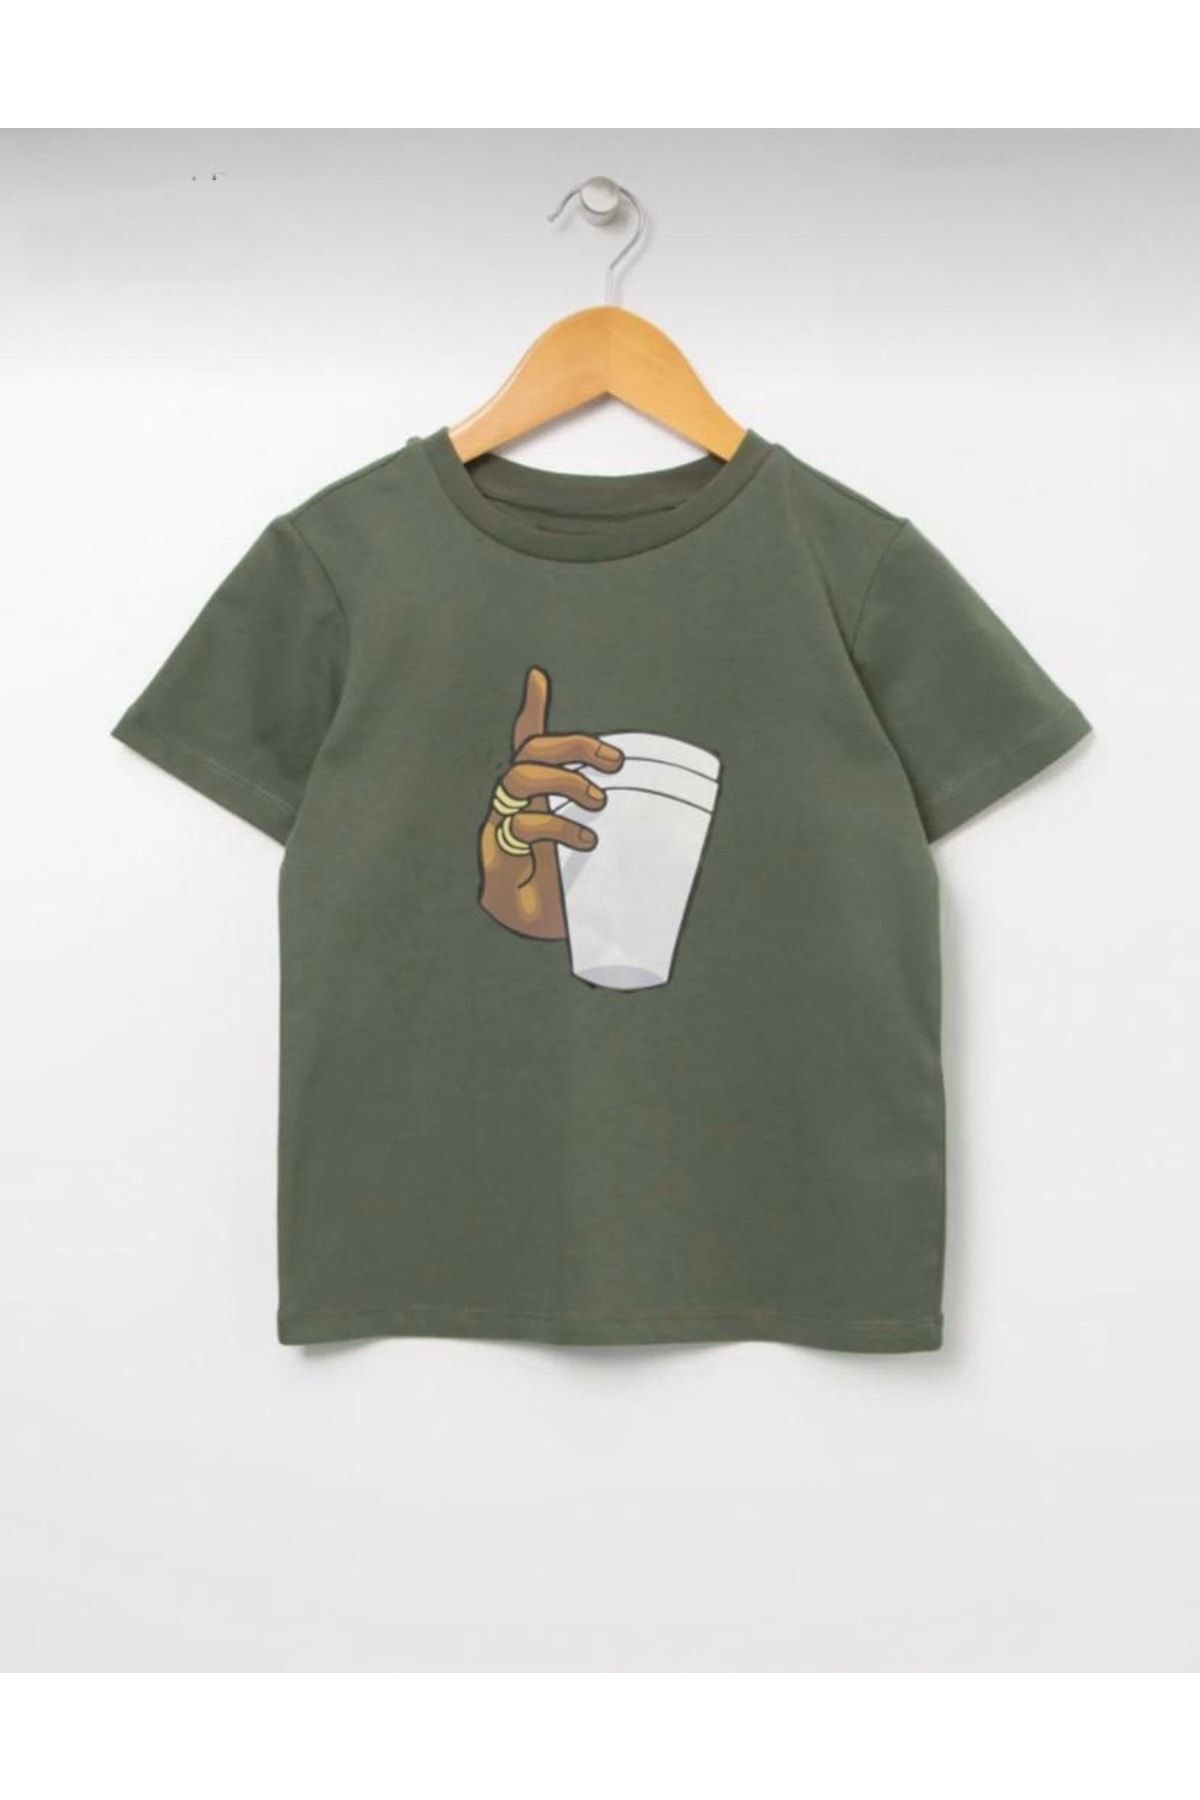 Serays moda Coffe Bardaklı Baskılı Kız/erkek T-shirt